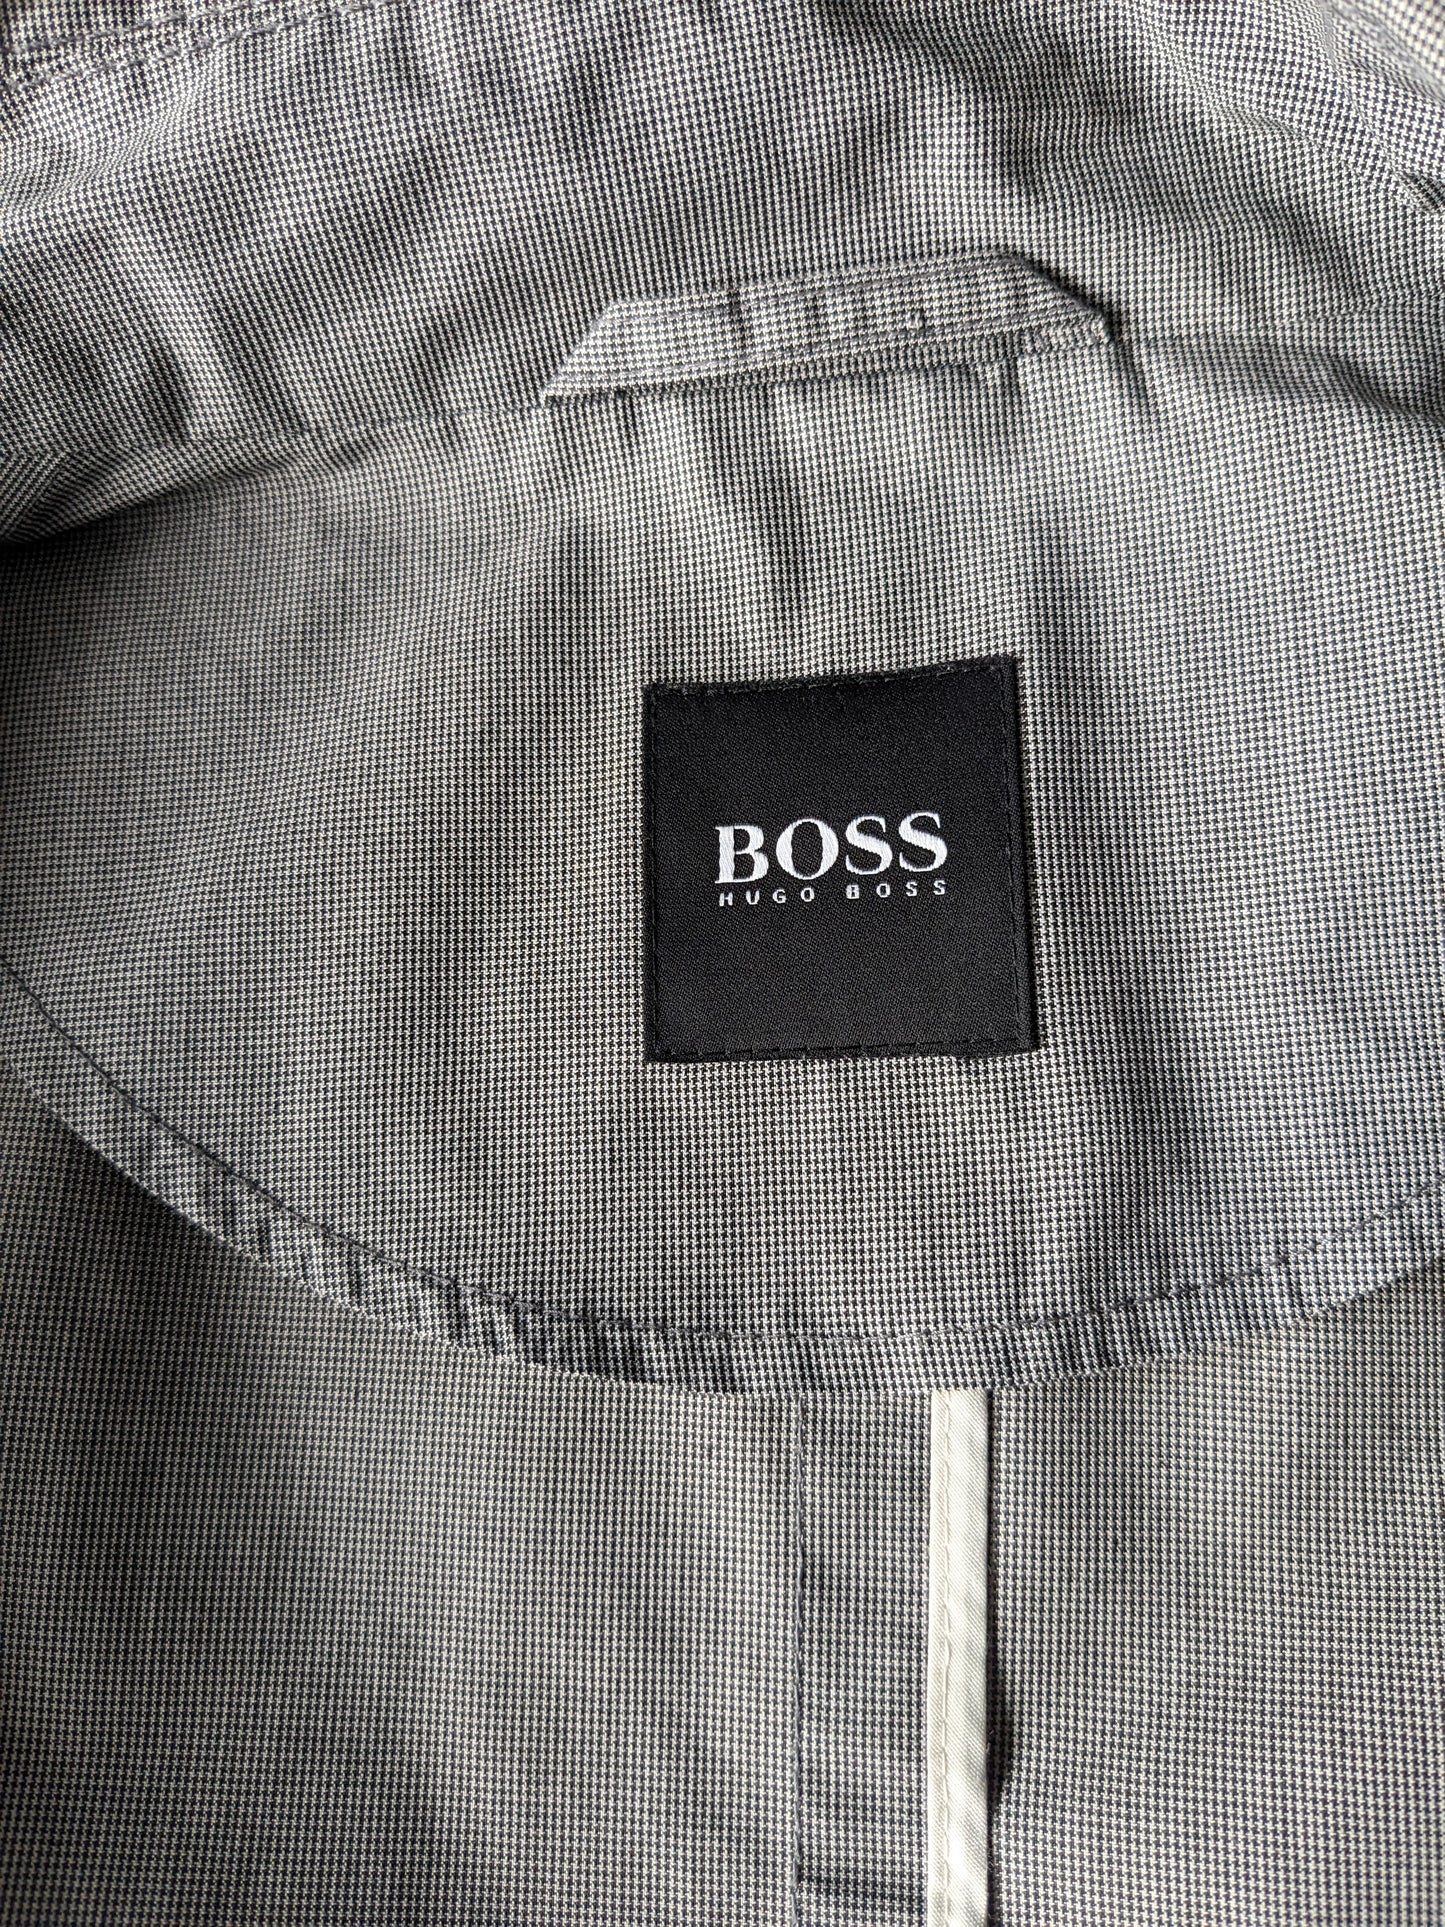 Boss Hugo Bus tra giacca / media lunghezza. Motivo in bianco e nero. Taglia 50 / M.